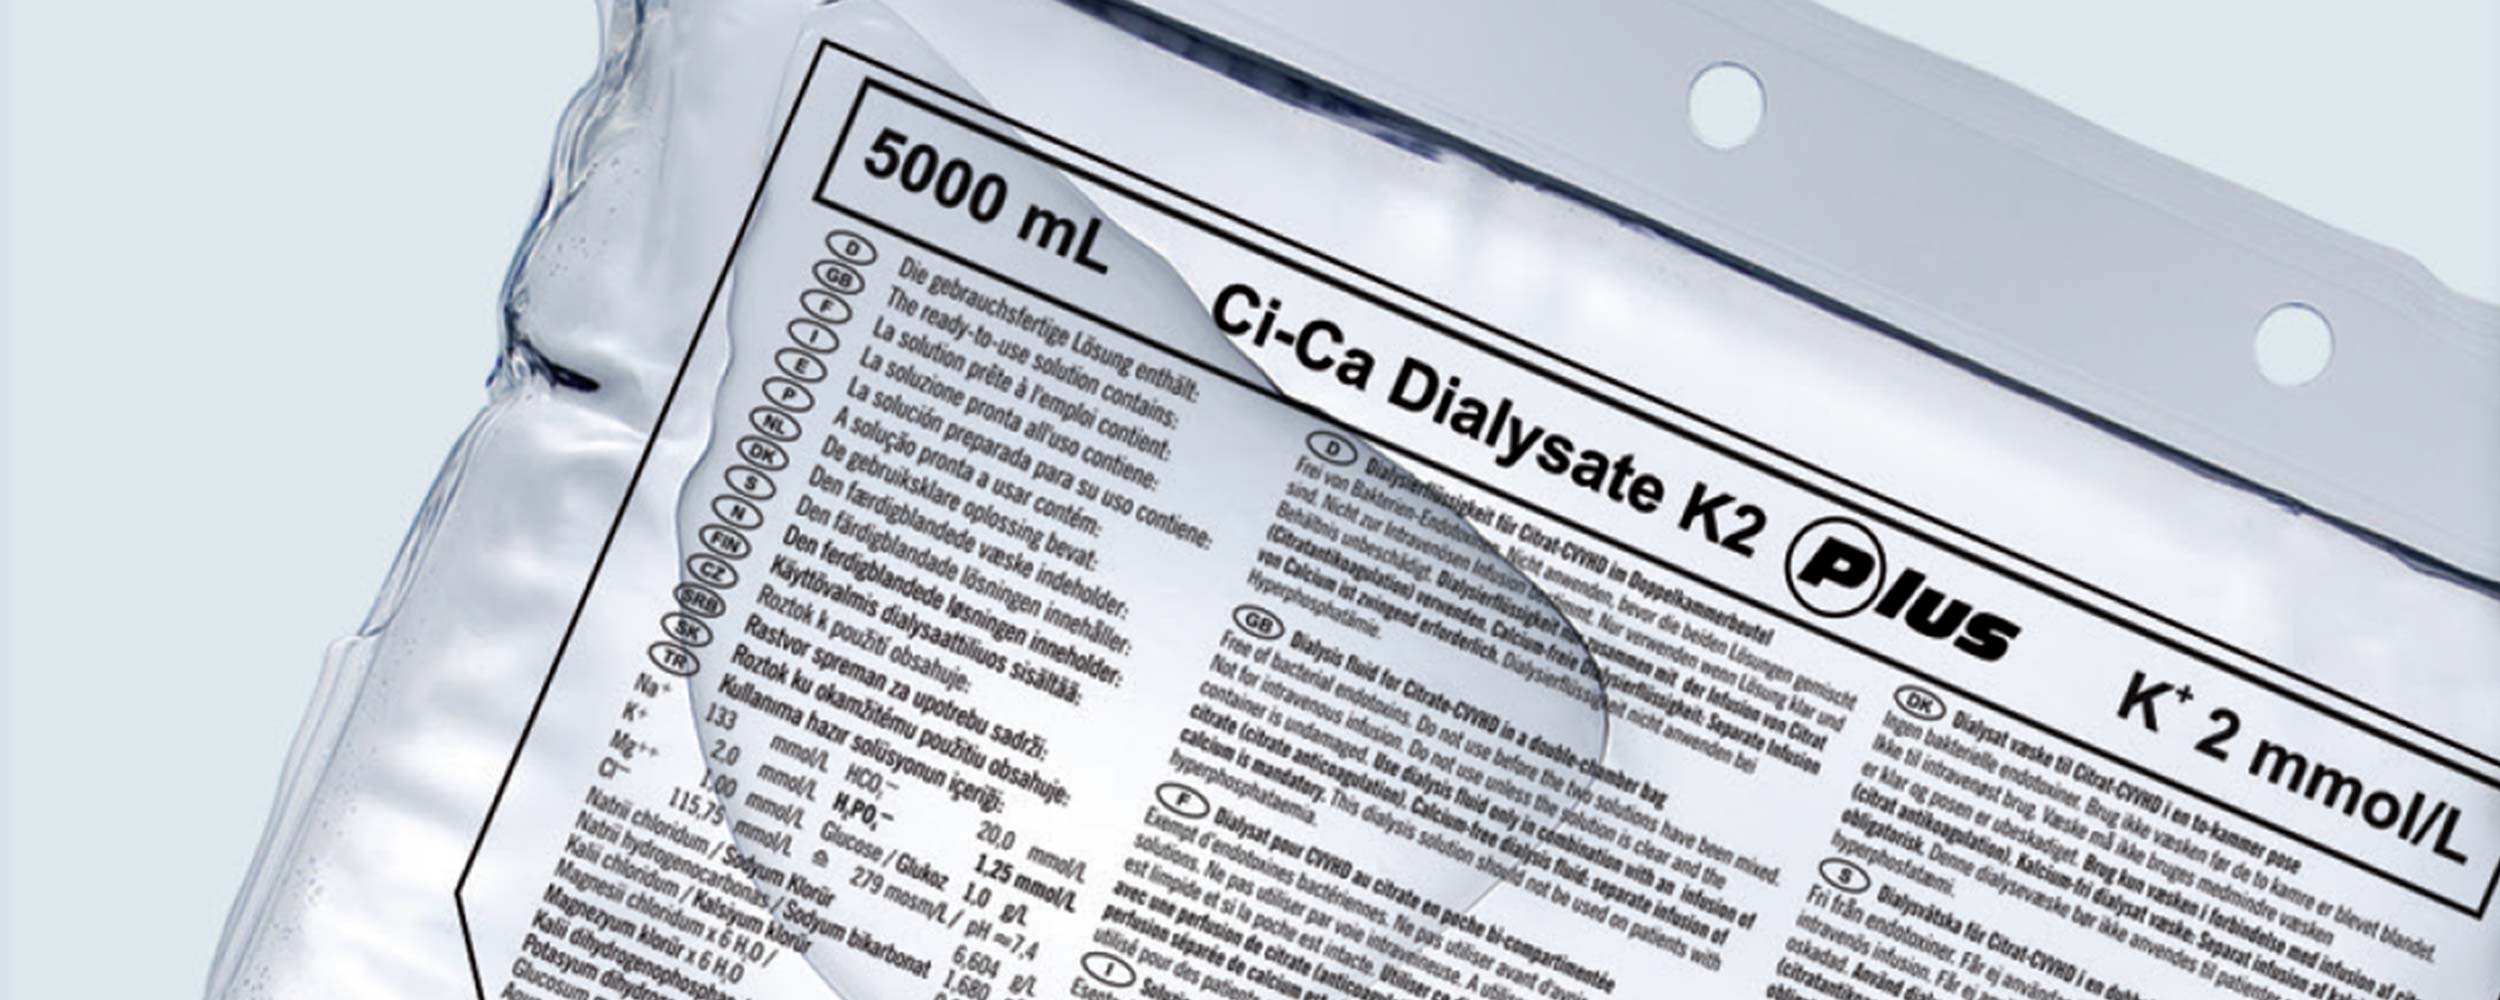 Ci-Ca® Dialysate Plus solution bag